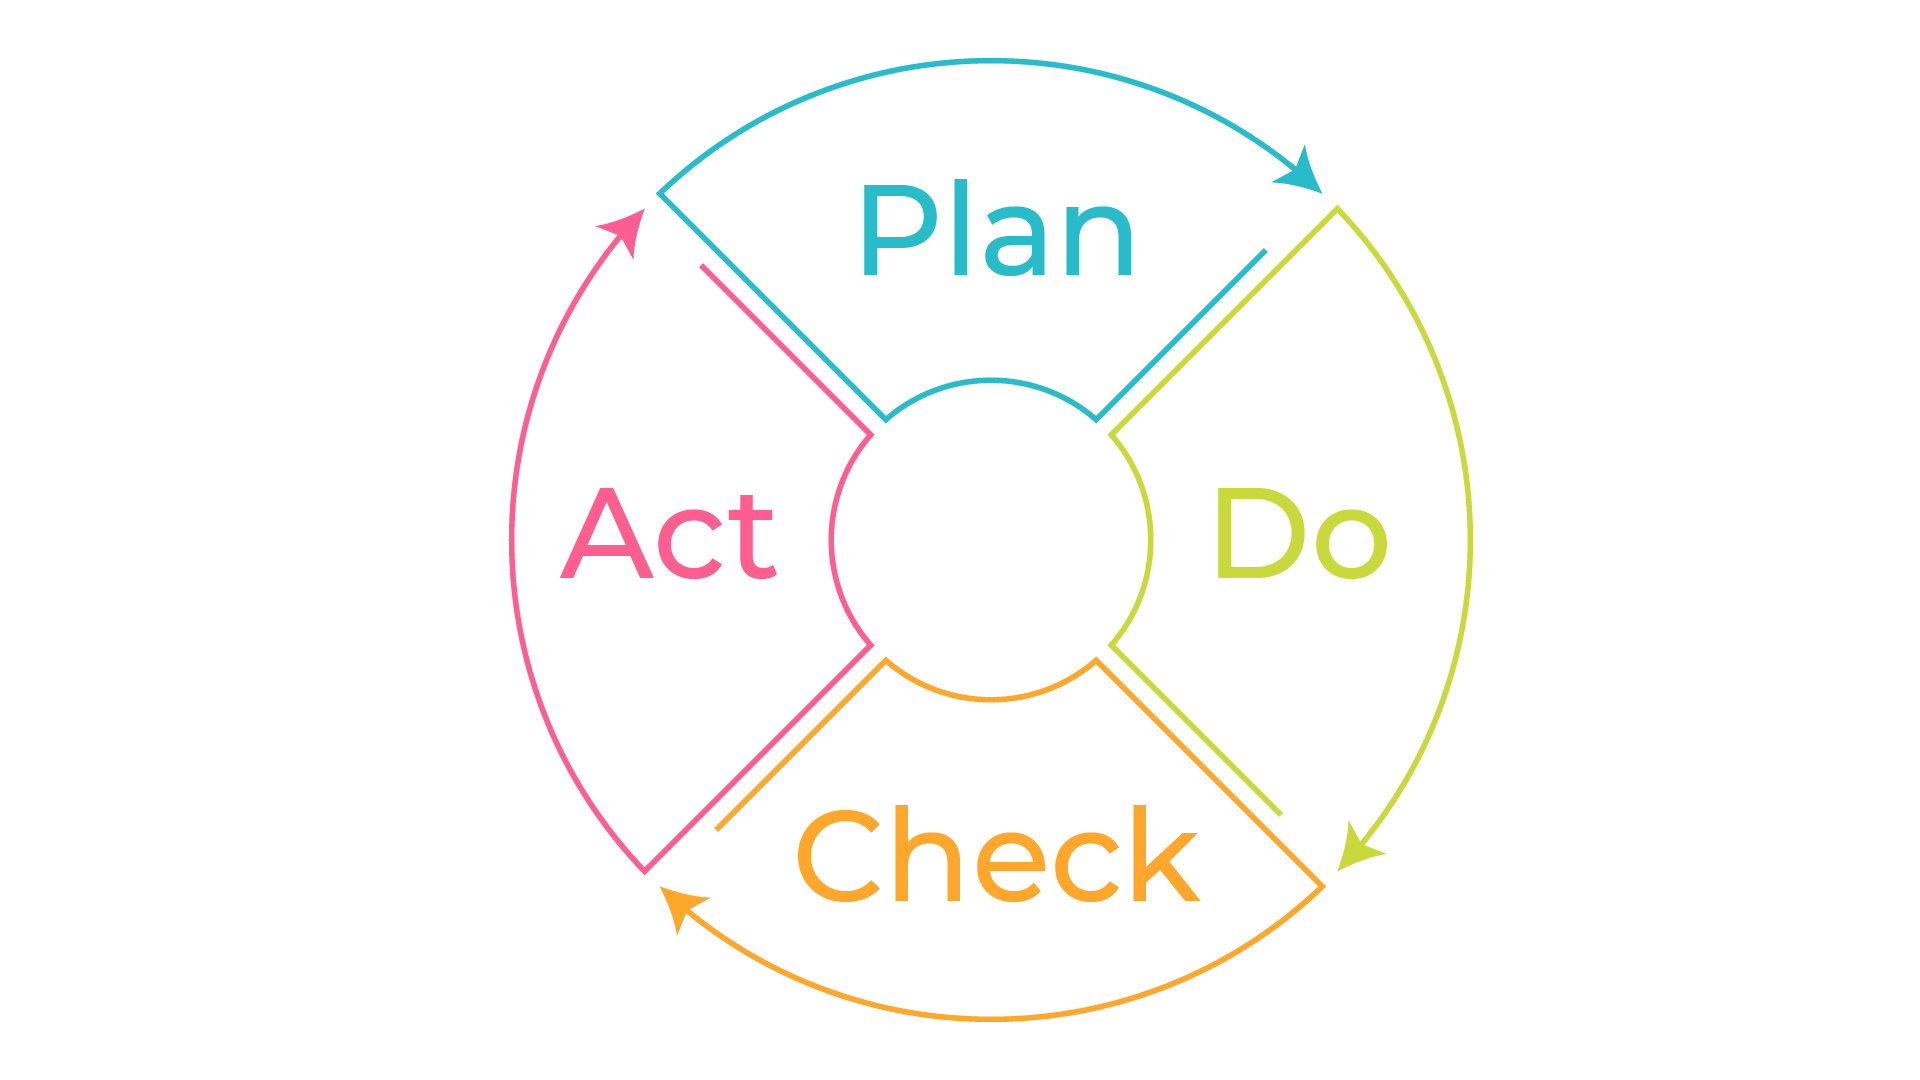 Le cycle Plan-Do-Check-Act